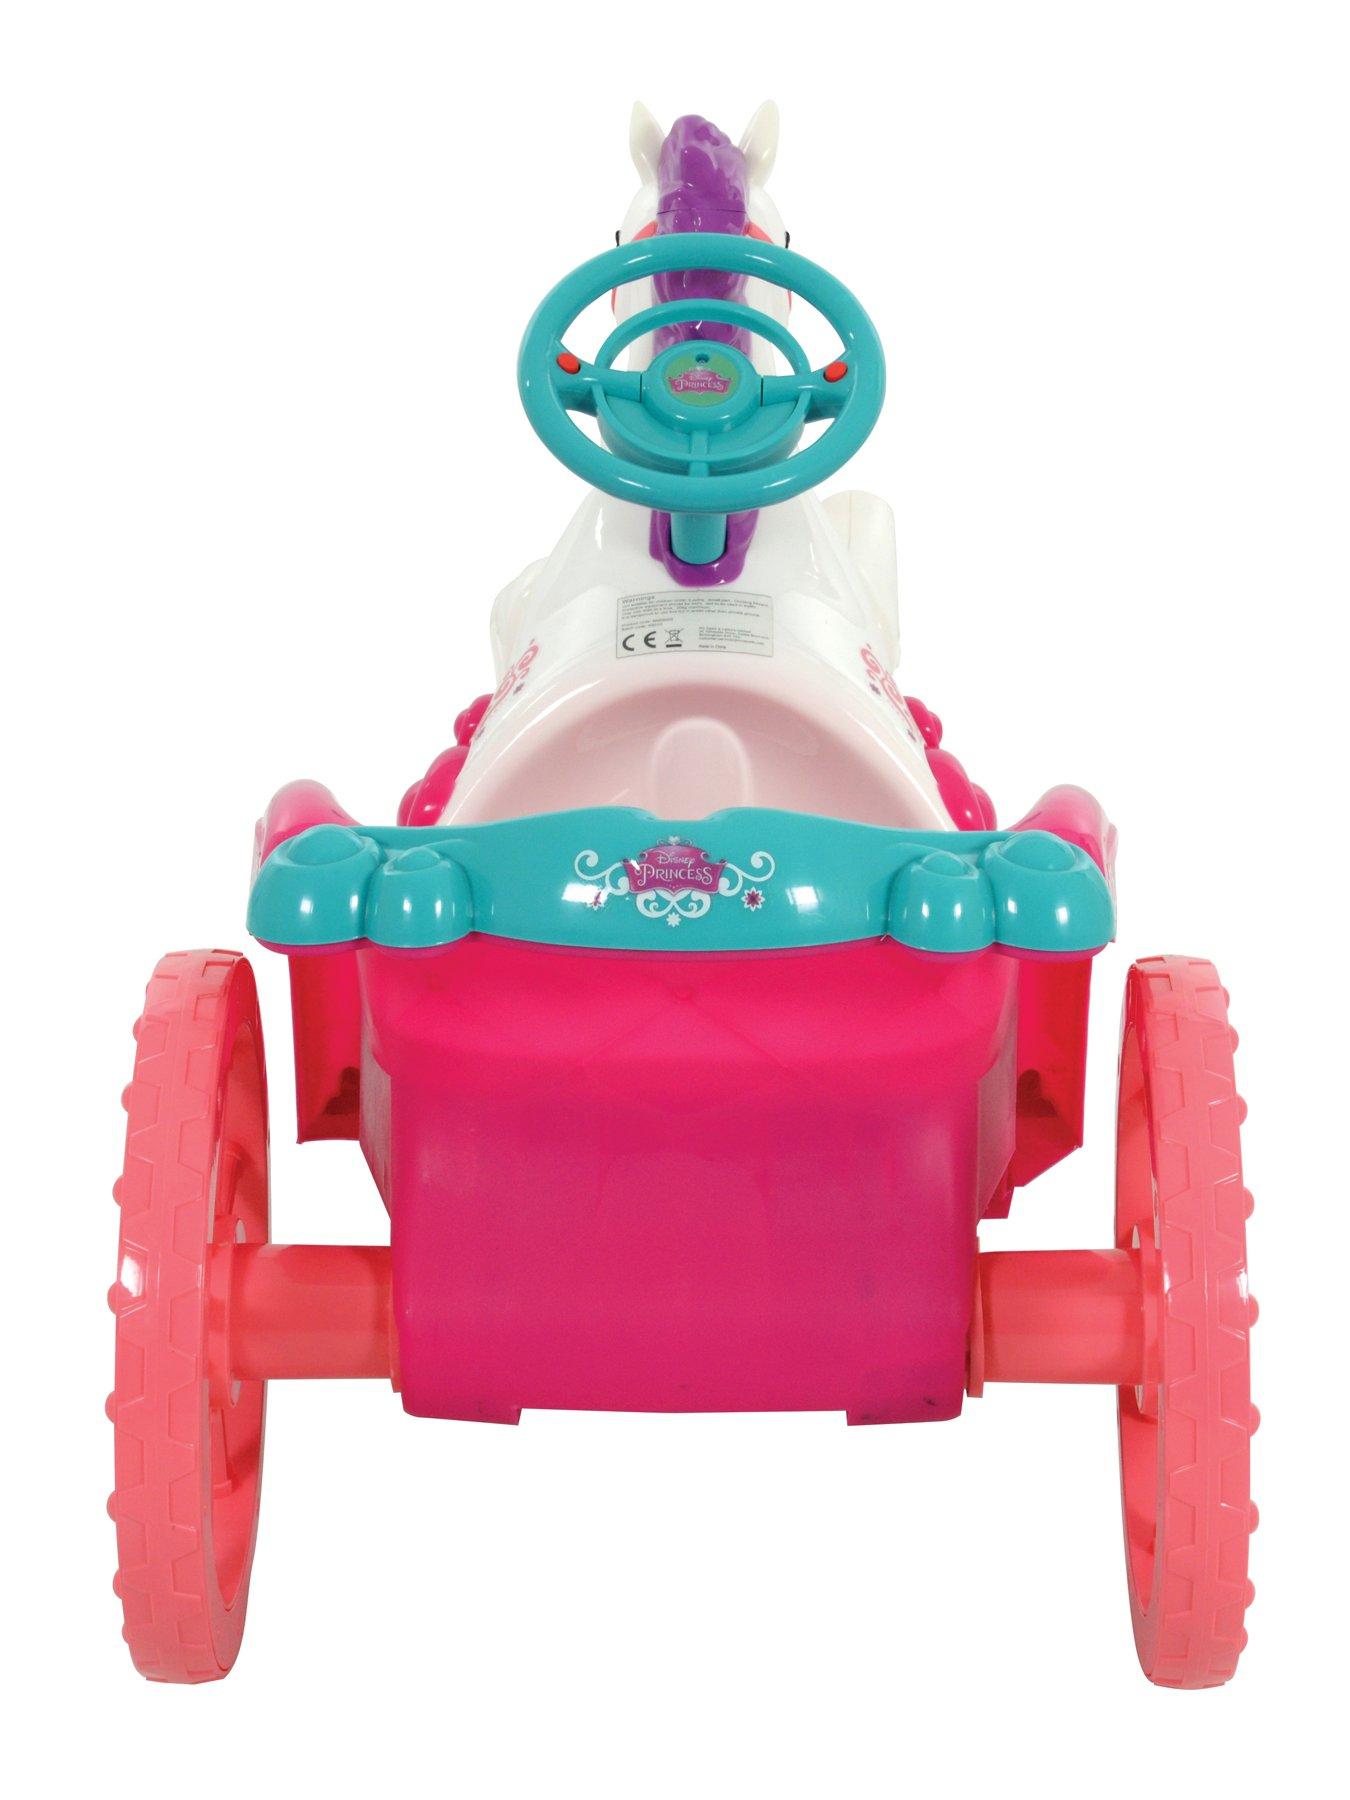 disney princess preschool carriage